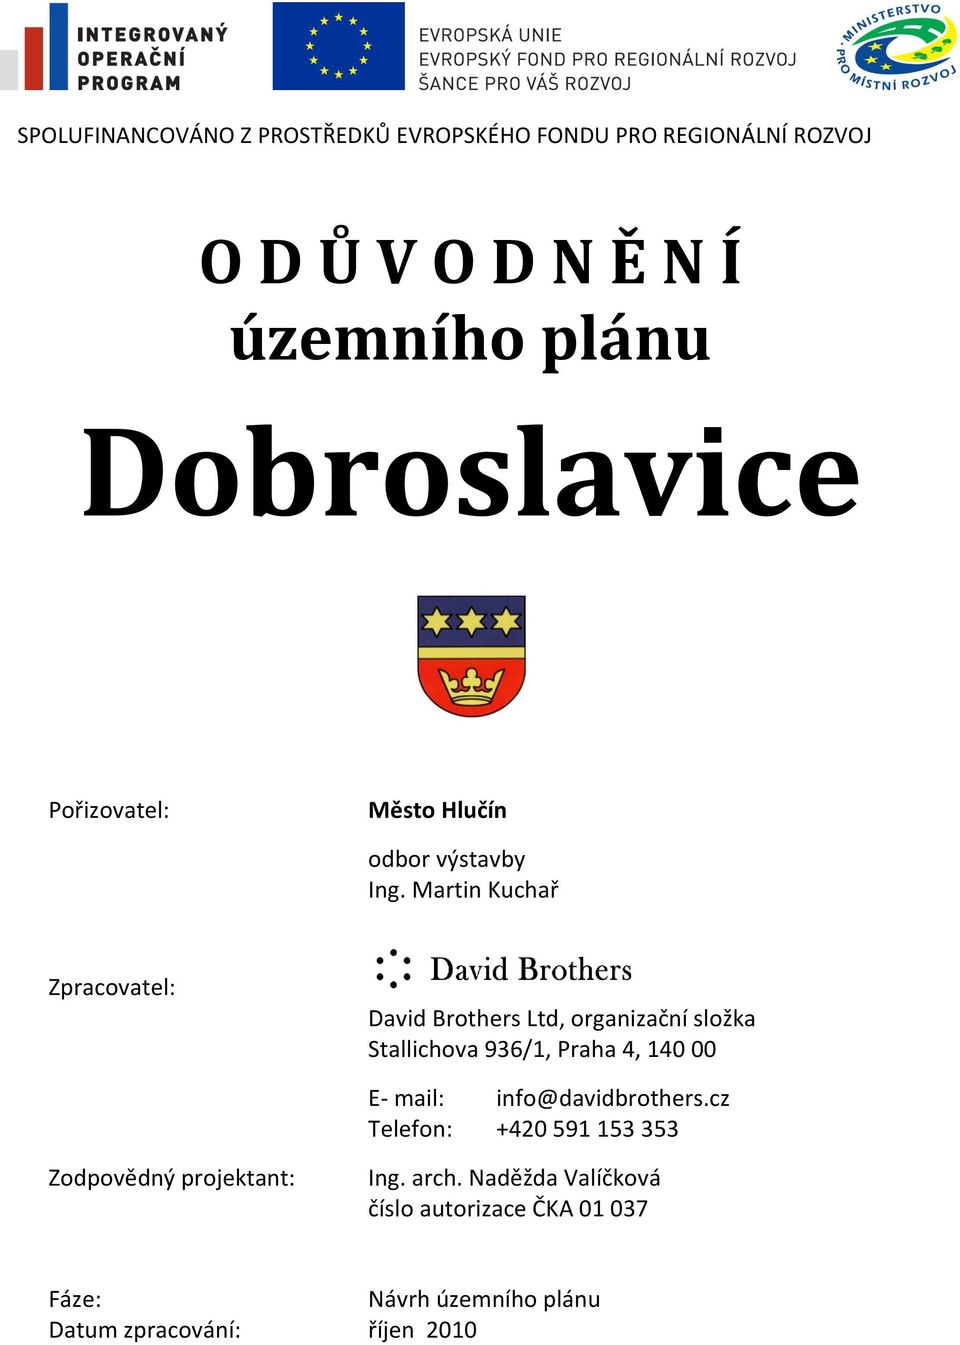 Martin Kuchař Zpracovatel: David Brothers Ltd, organizační složka Stallichova 936/1, Praha 4, 140 00 E- mail: